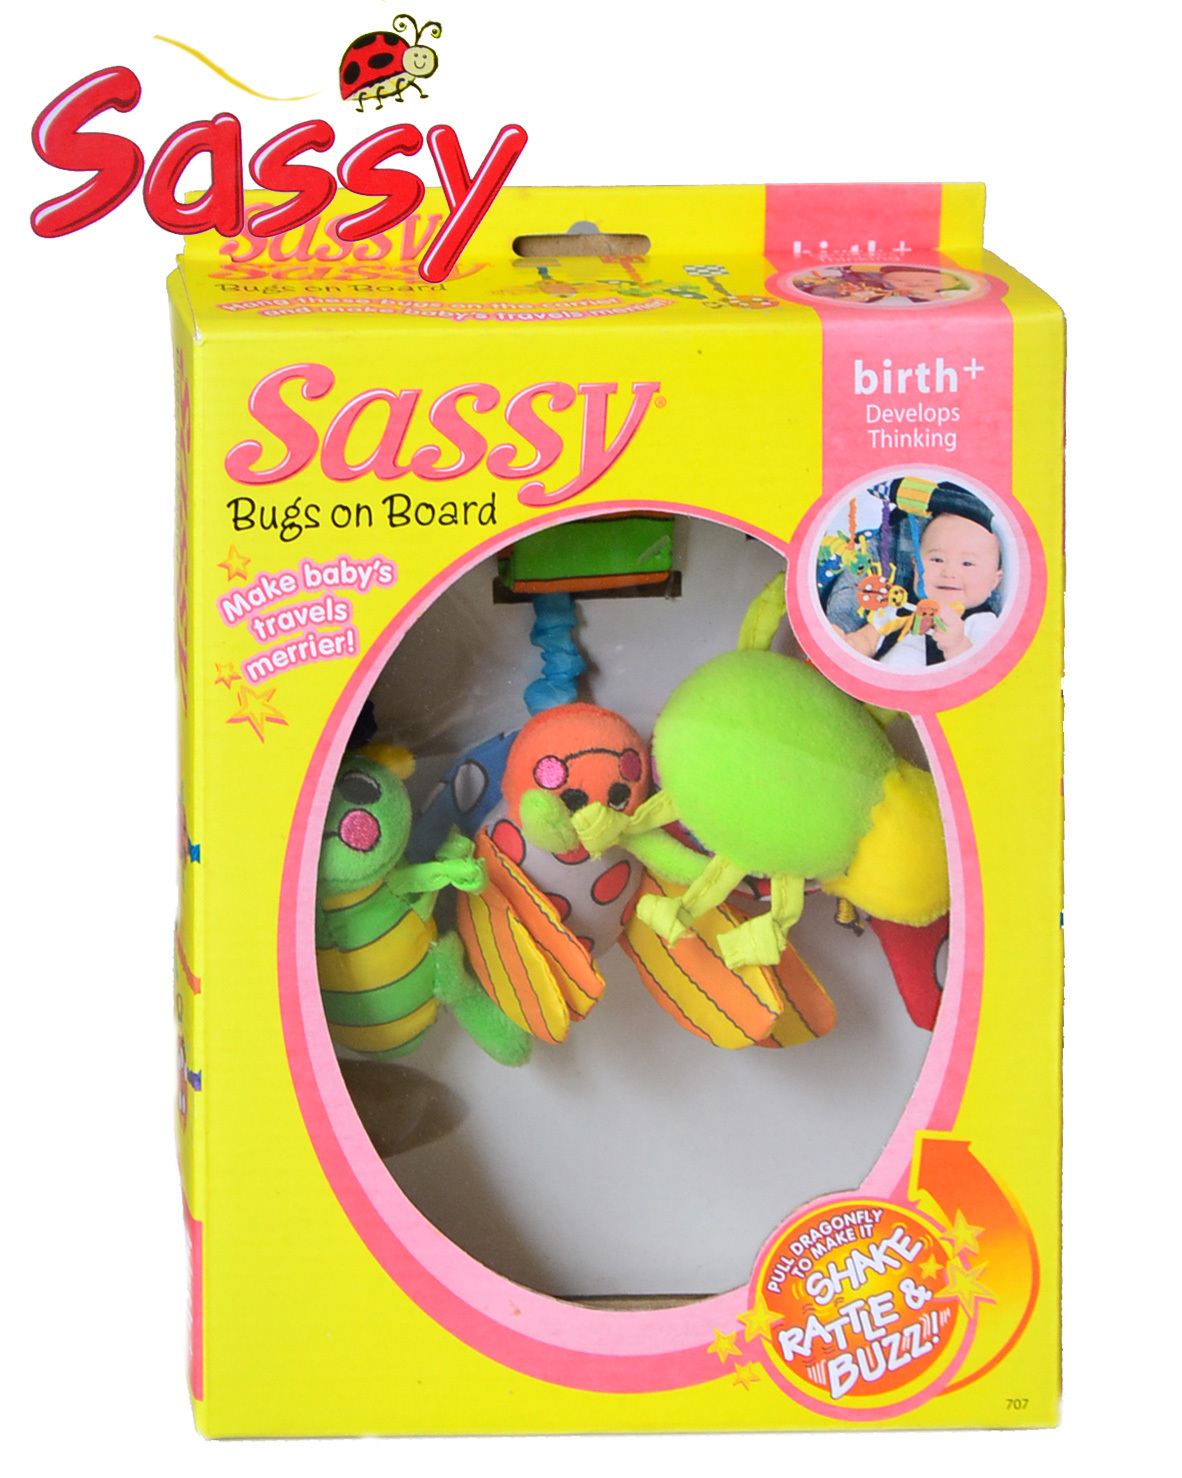 Sassy サッシー バグズ オン ボード 3コセット マジックテープつきのお出かけ用おもちゃのセット Cochi Ka Ka 東風かか